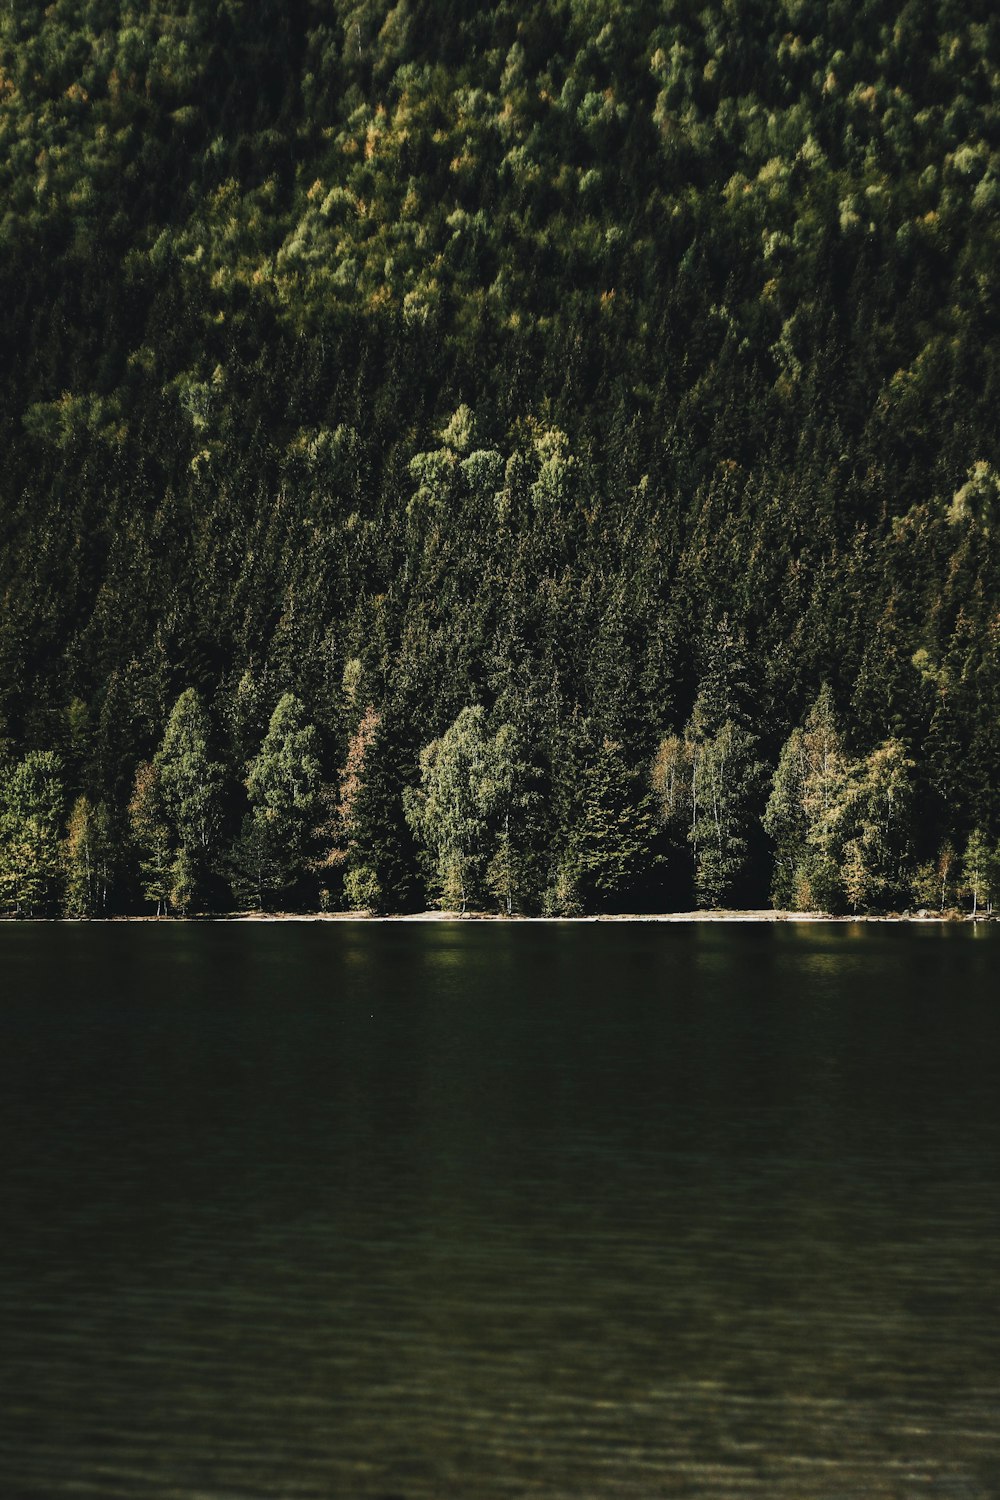 Landschaftsfotografie eines Gewässers neben einem grünen, mit Bäumen bewachsenen Berg